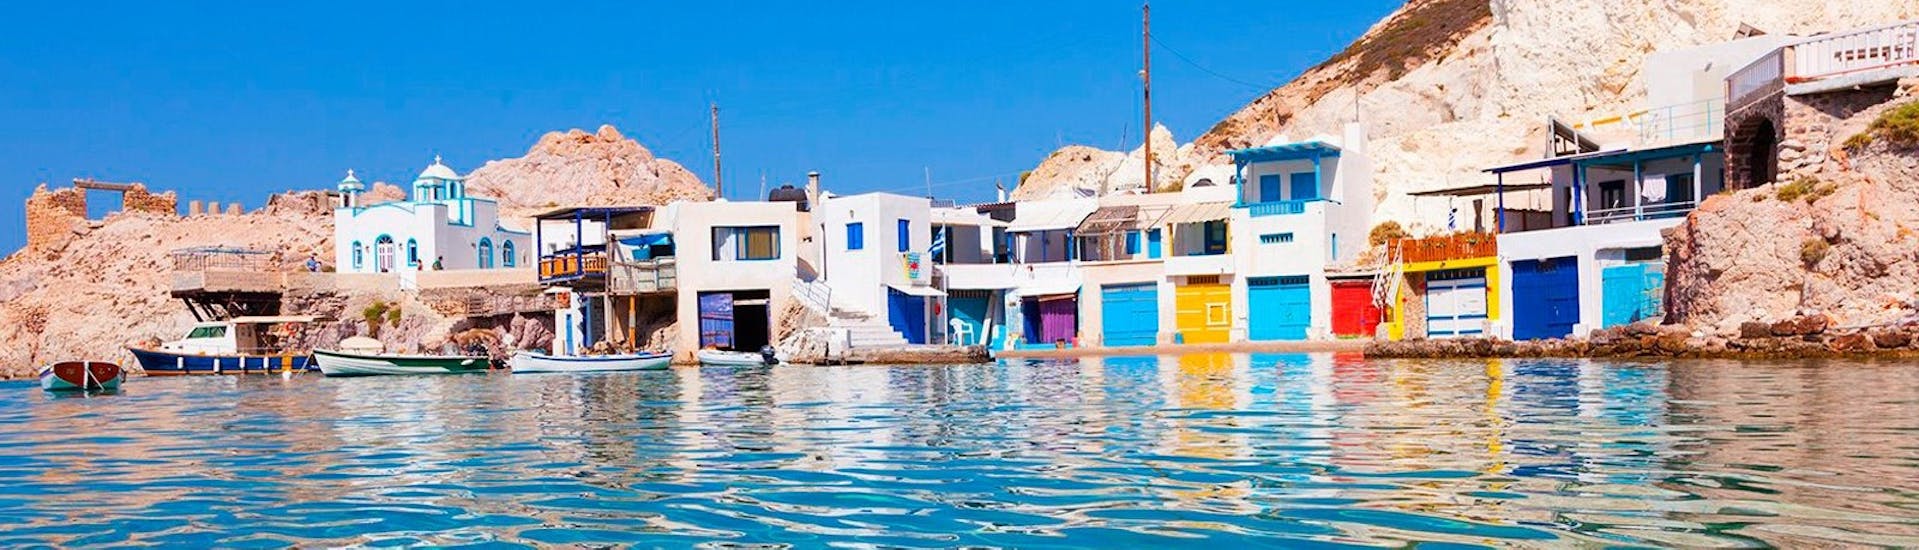 Das farbenfrohe Dorf Klima, wo der Status der Venus de Milo entdeckt wurde, in der privaten Luxus-Yacht-Tour nach Folegandros, Sikinos, Polyaigos & Kimolos mit Indigo Yacht Milos.